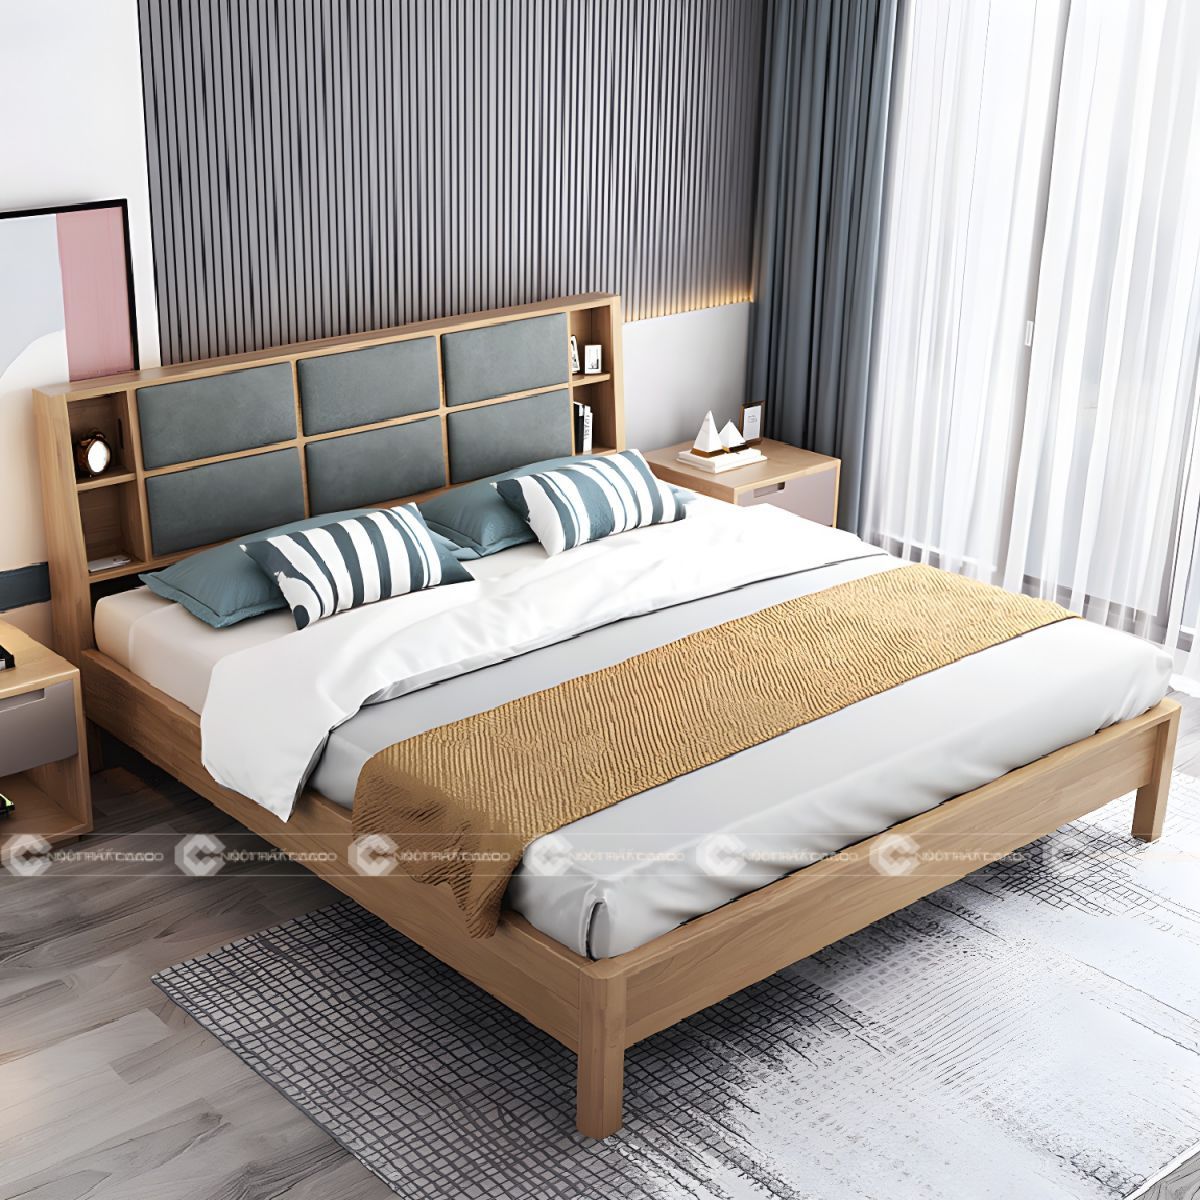 Giường ngủ gỗ tự nhiên bọc nệm đầu giường thanh lịch